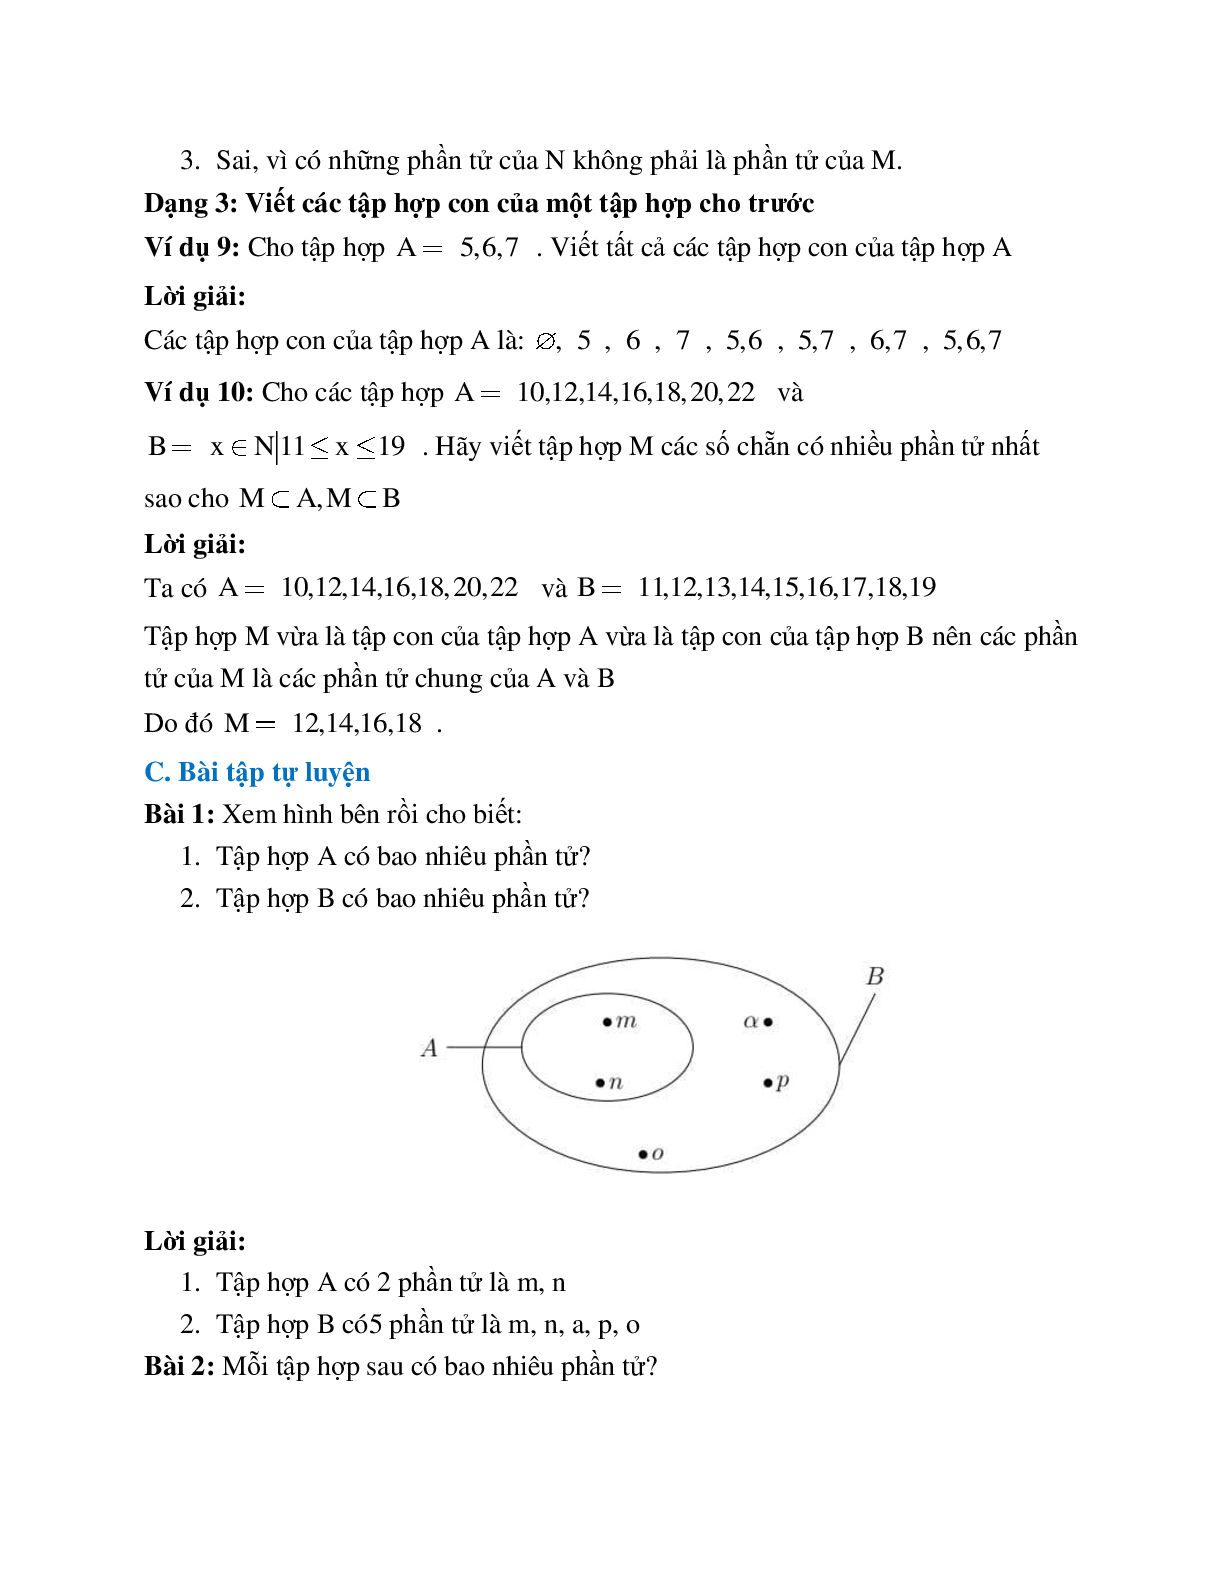 Hệ thống bài tập về Số phần tử của một tập hợp - Tập hợp con có lời giải (trang 4)